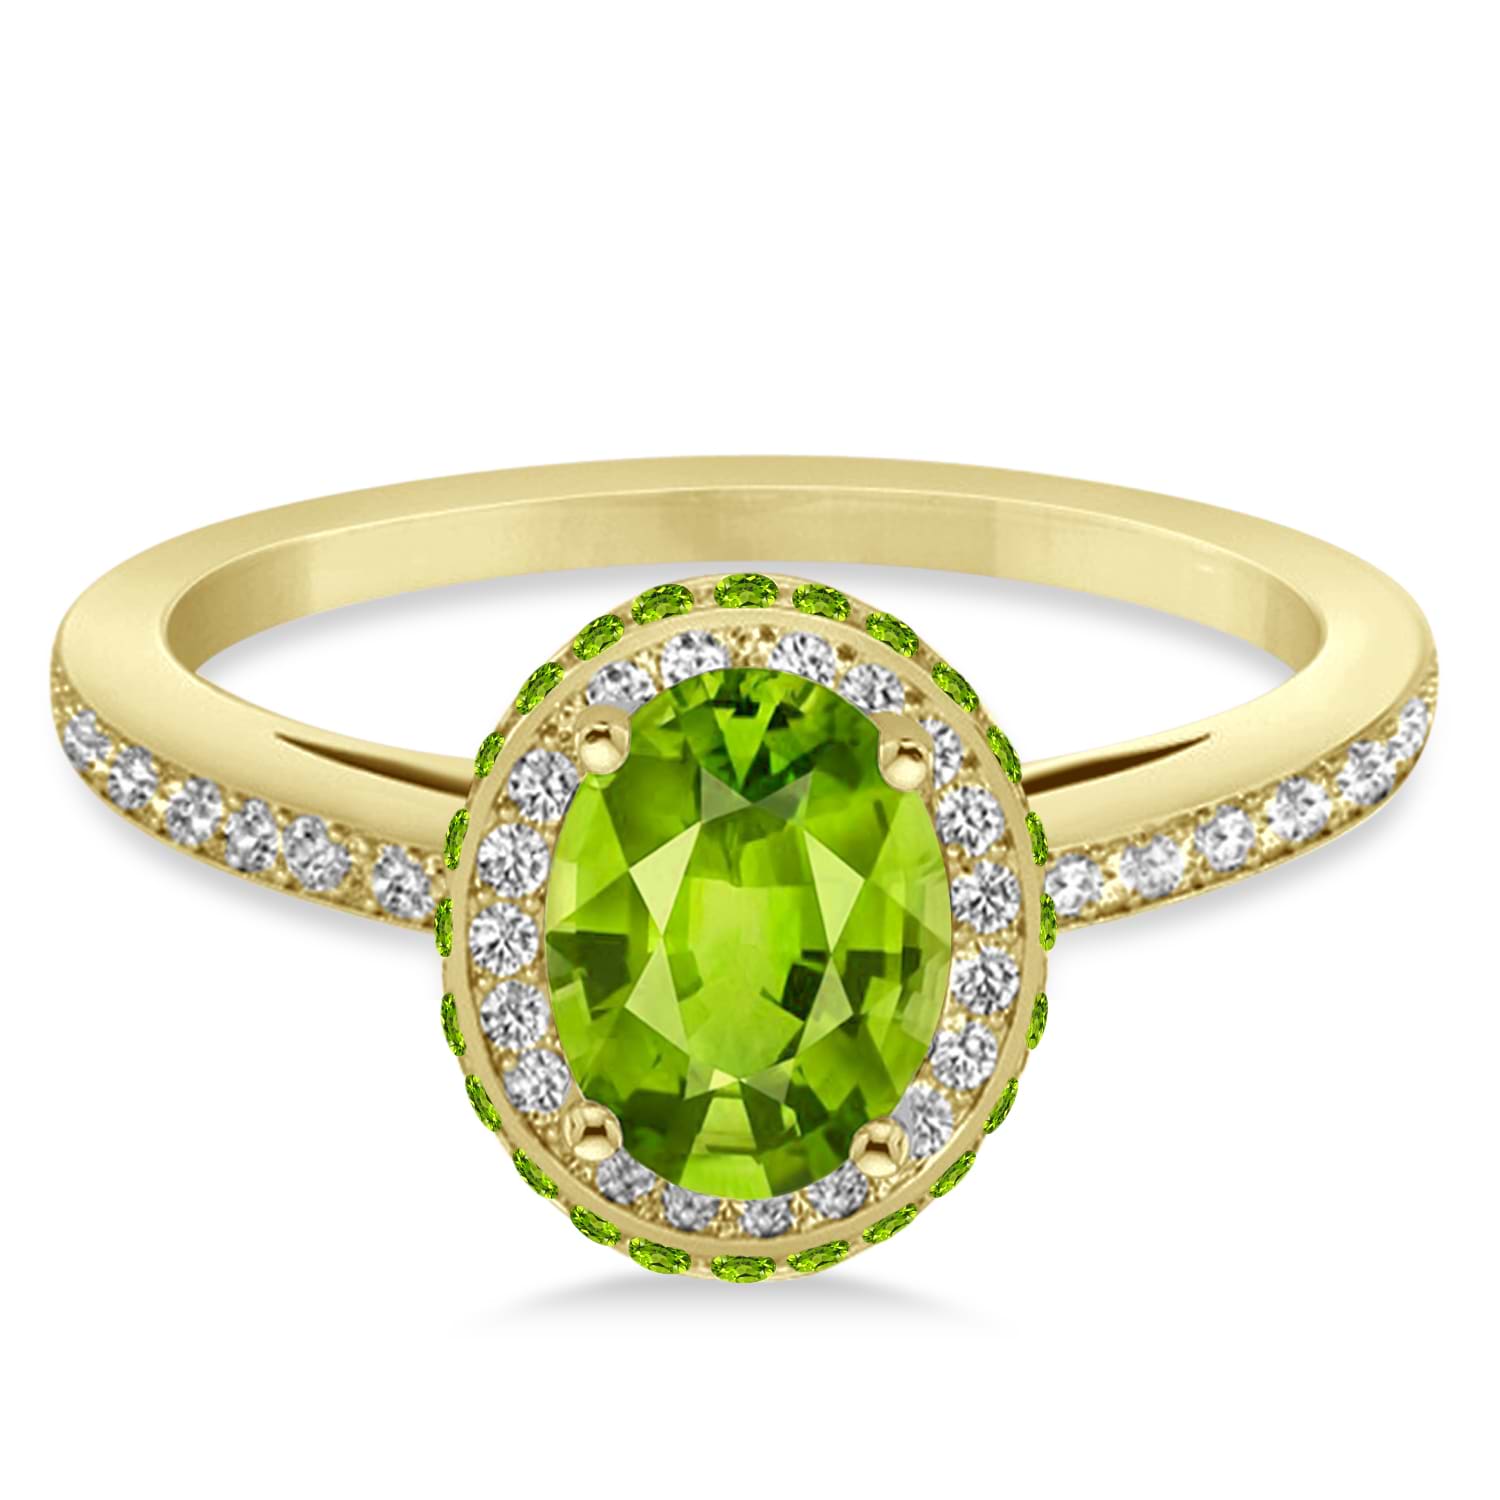 Oval Peridot & Diamond Halo Engagement Ring 14k Yellow Gold (1.85ct)